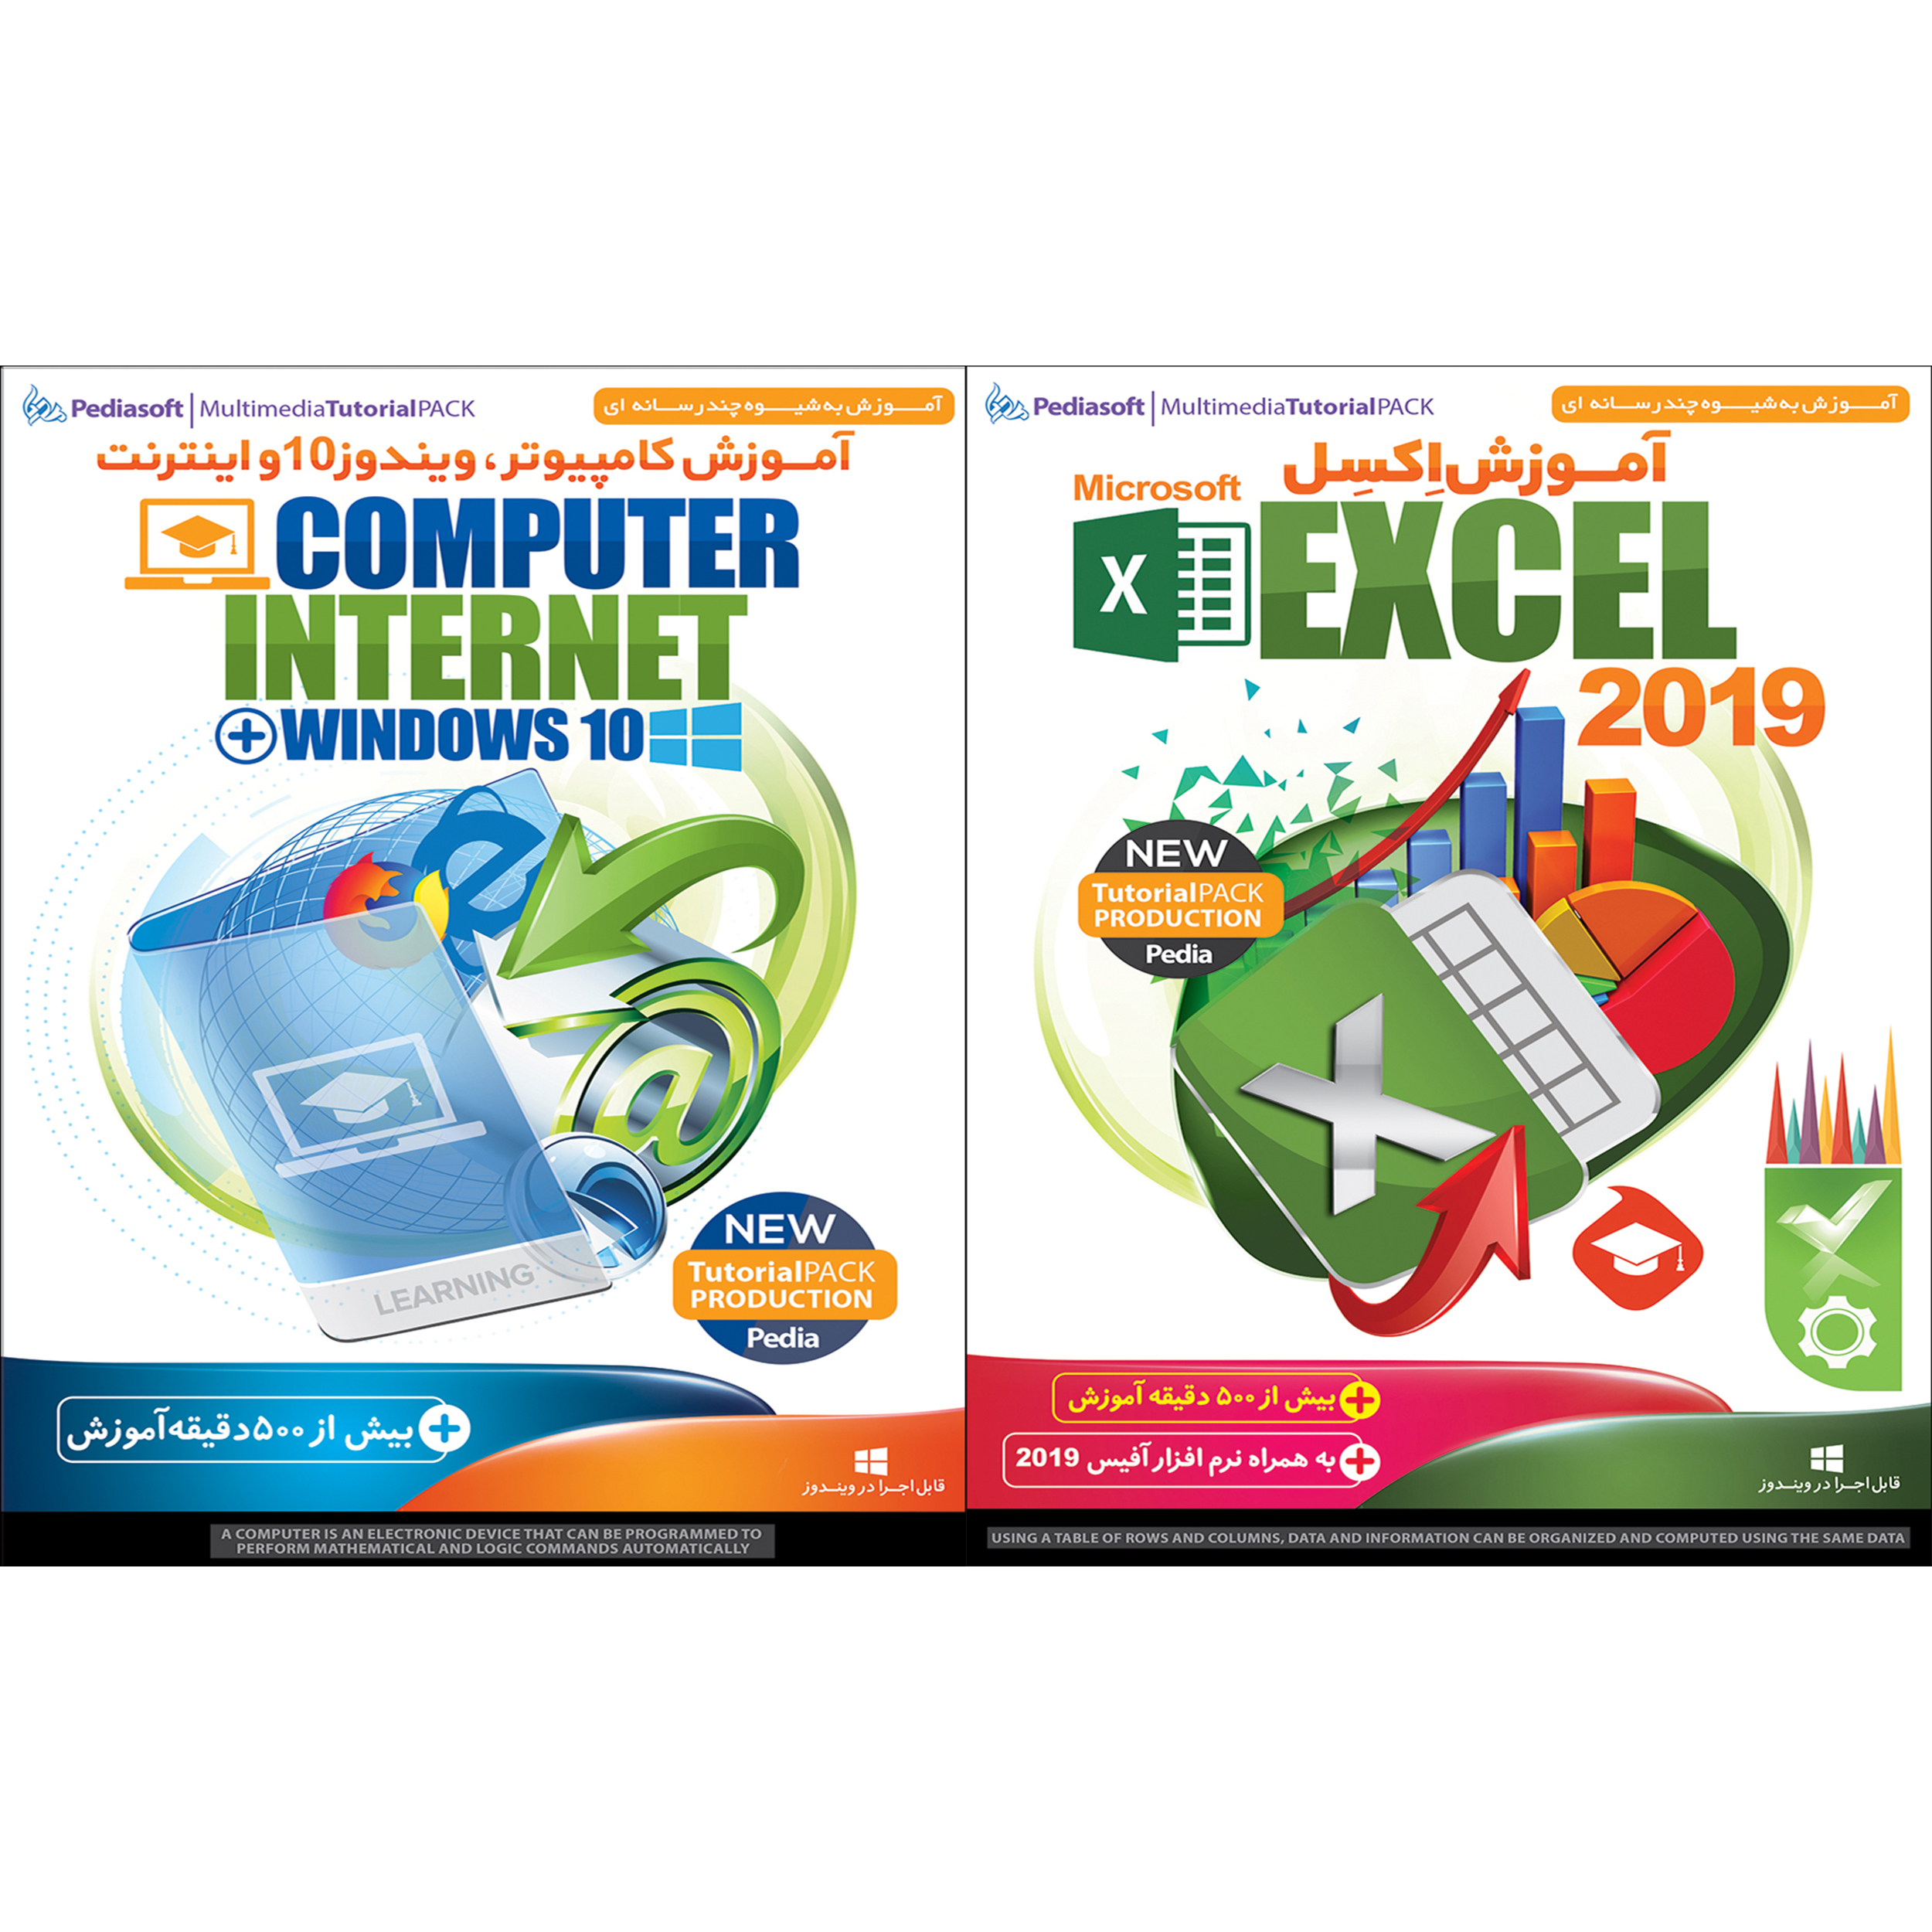 نرم افزار آموزش اکسل Excel 2019 نشر پدیا سافت به همراه نرم افزار آموزش کامپیوتر ویندوز 10 و اینترنت نشر پدیا سافت